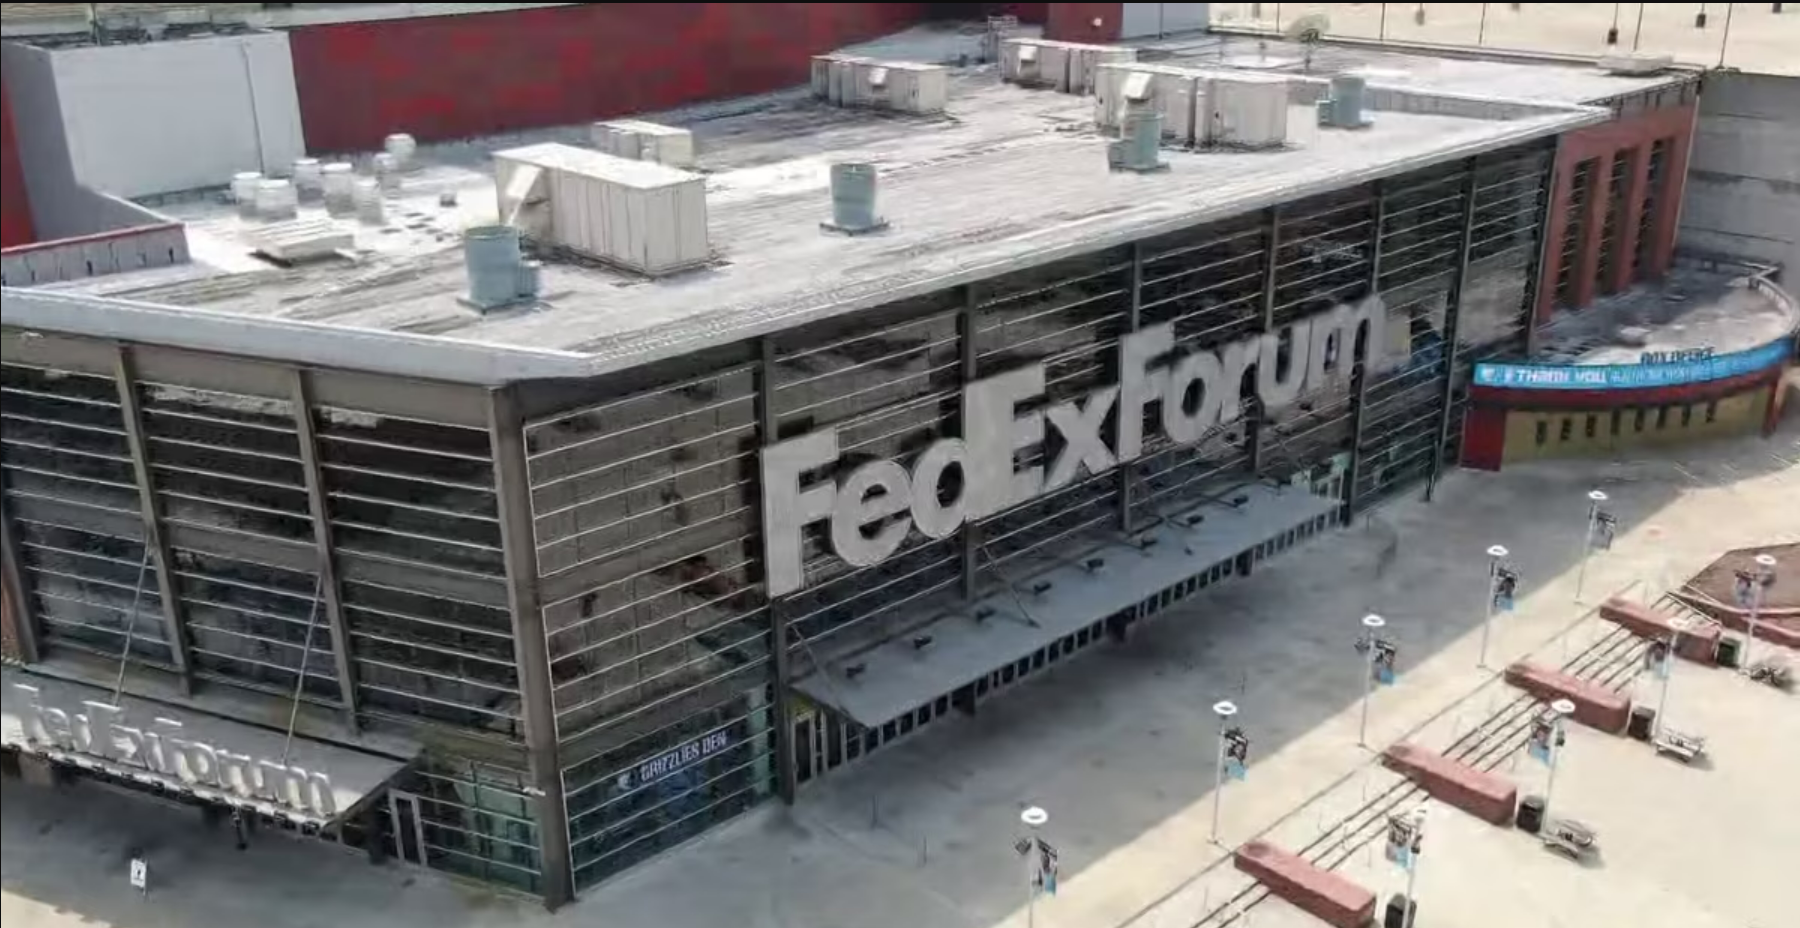 Memphis FedExForum highest rated NBA arena